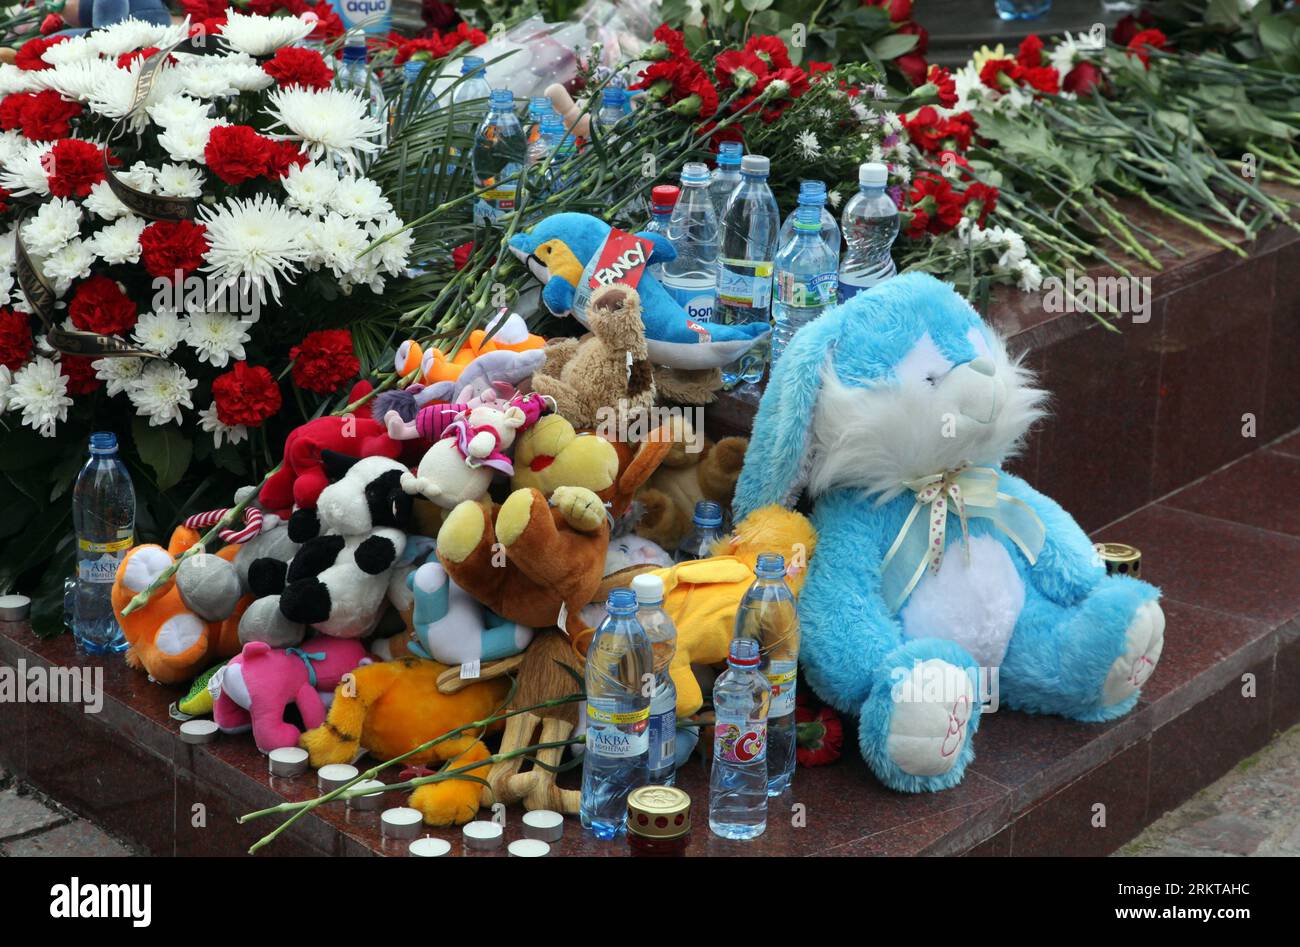 Bildnummer: 58424115 Datum: 03.09.2012 Copyright: Imago/Xinhua (120903) -- MOSCÚ, 3 de septiembre de 2012 (Xinhua) -- Flores y juguetes se colocan alrededor de un monumento a las víctimas del ataque terrorista de Beslán, durante una conmemoración en Moscú, Rusia, el 3 de septiembre de 2012. El 1 de septiembre de 2004, los separatistas chechenos llevaron a más de 1.000 maestros, padres y niños al gimnasio de la Escuela Nº 1 de Beslan. El gimnasio estaba equipado con explosivos y un total de 334 rehenes, incluidos 186 niños, perdieron la vida cuando el asedio llegó a su sangrienta conclusión tres días después. (XINHUA) RUSIA-MOSCÚ-BESLÁN-TERRORISMO-C. Foto de stock